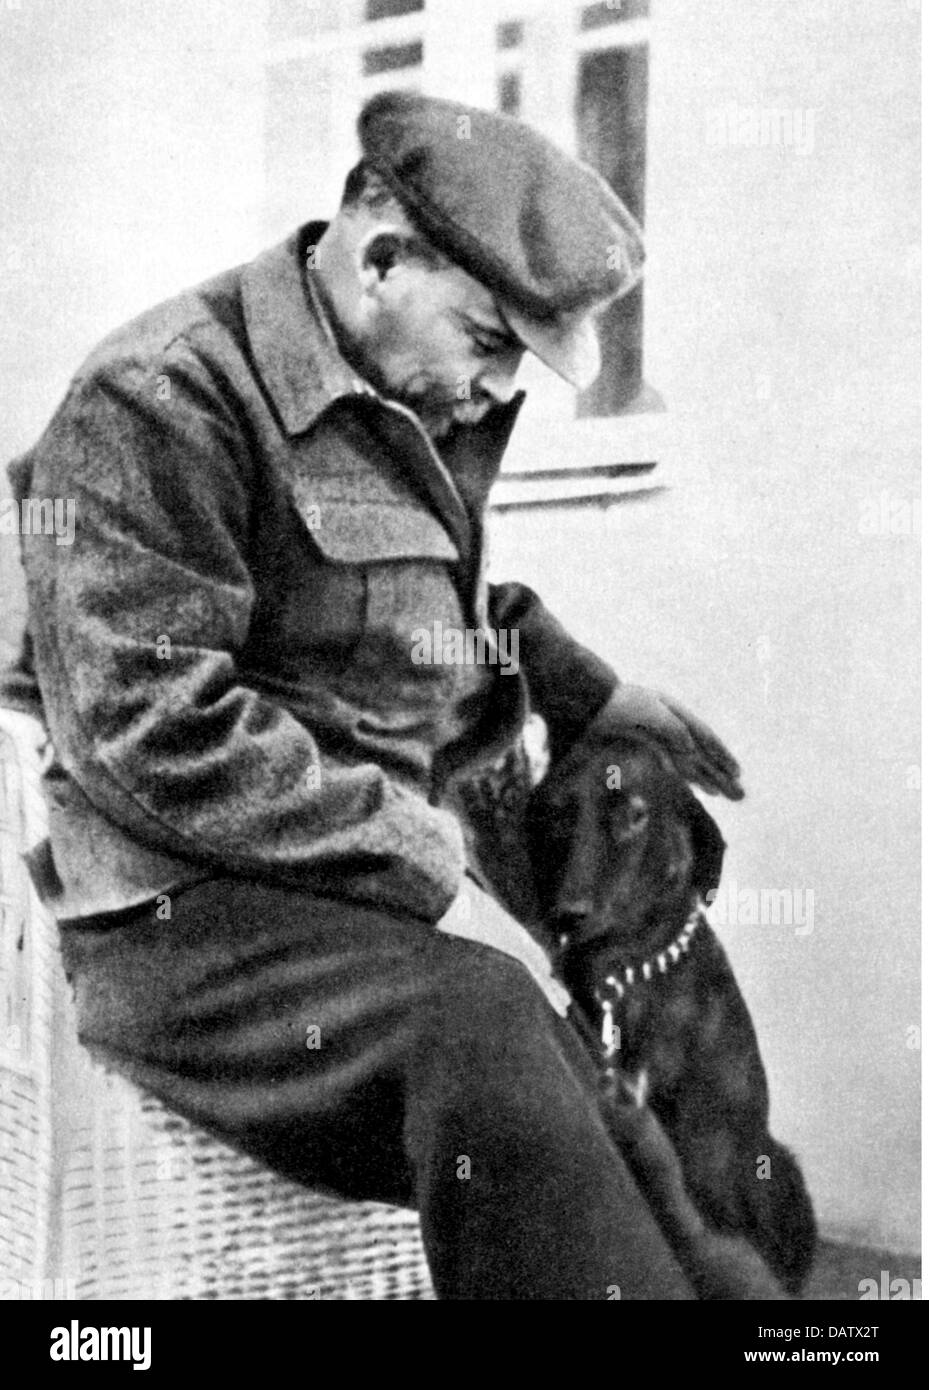 Lénine (Vladimir Ilyich Ulyanov), 22.4.1870 - 21.1.1924, politicien russe, demi-longueur, avec chien, en vacances, Nizhny Novgorod, août / septembre 1922, Banque D'Images